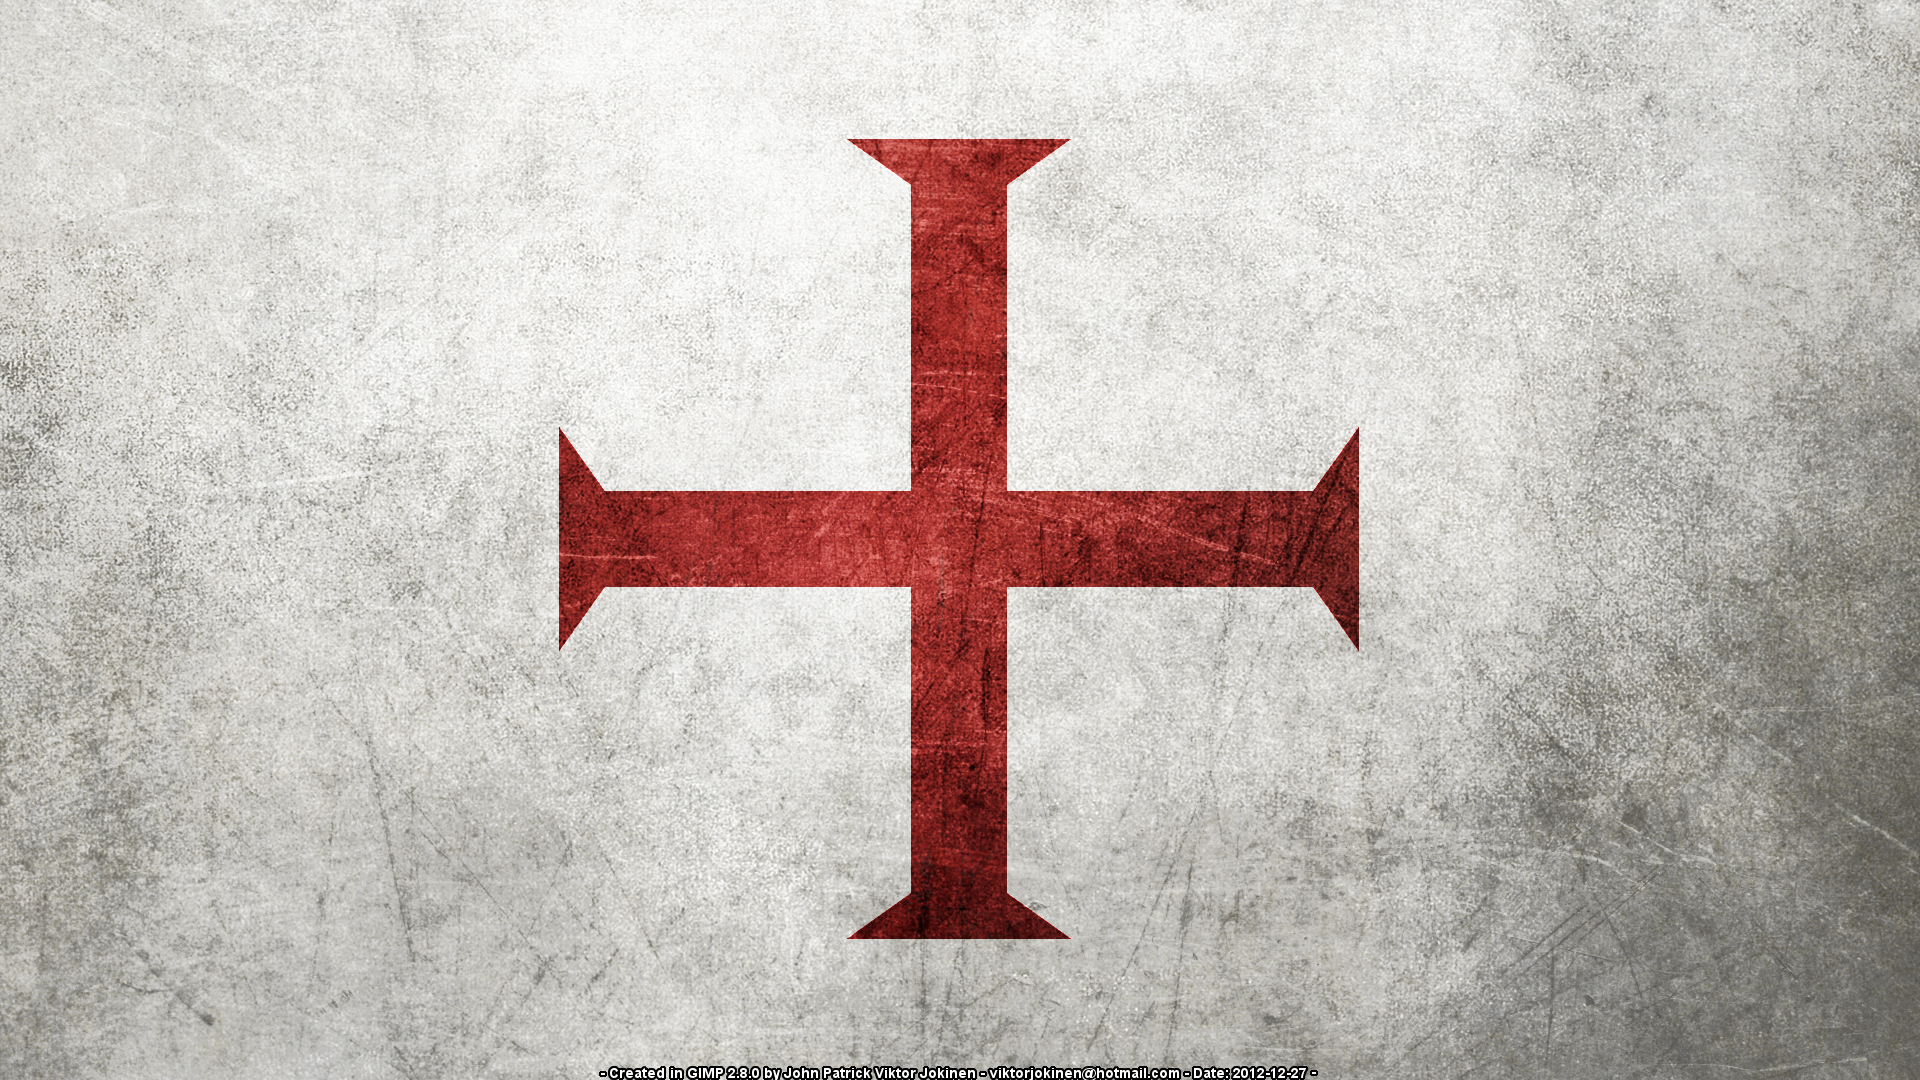 The Knights Templar - secret society